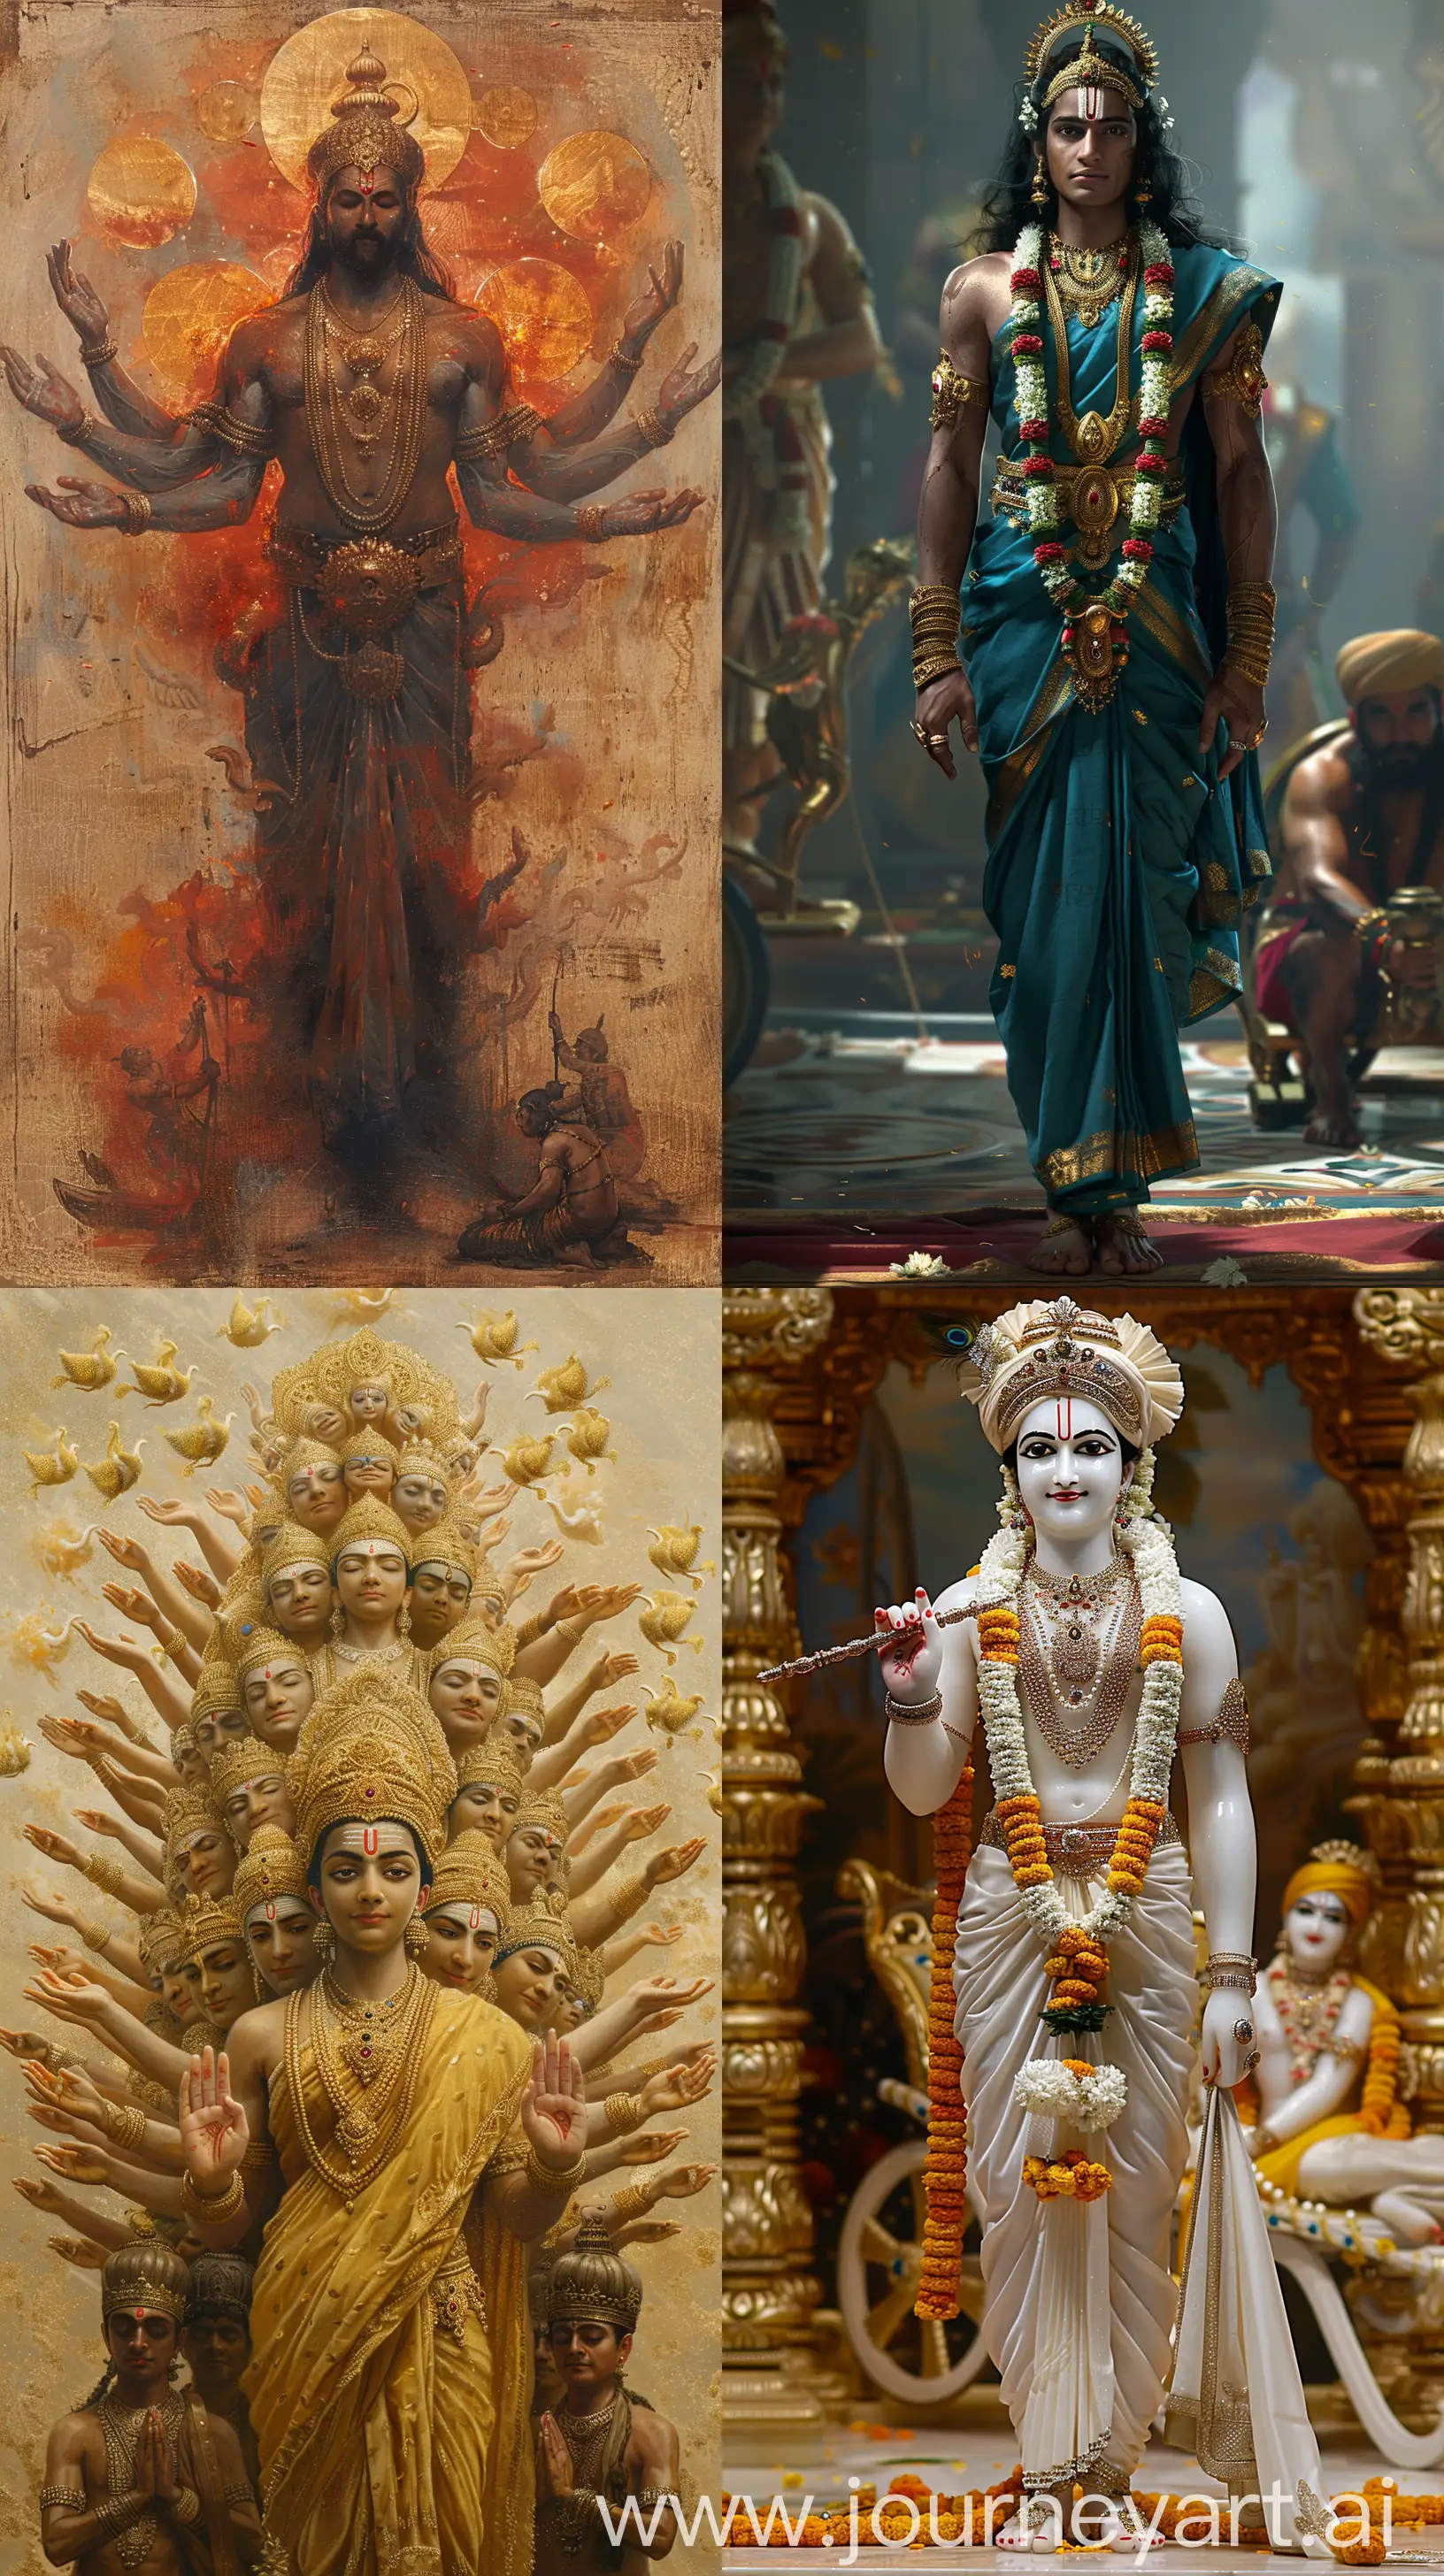 Divine-Hindu-God-Vishnu-in-Maharashtra-Setting